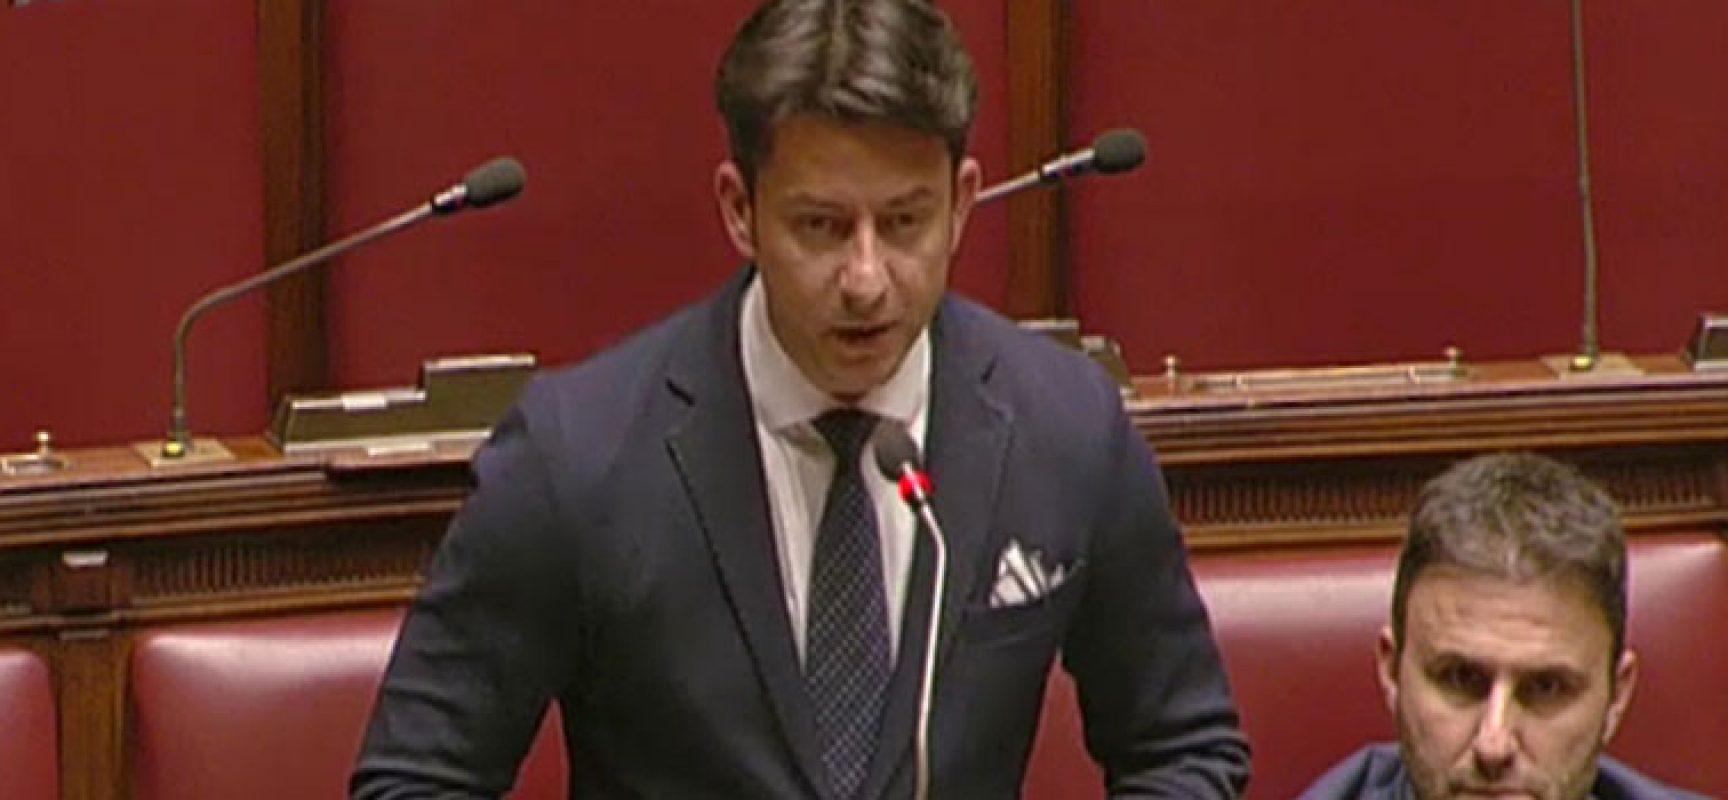 Galantino: “Governo metta mano a consenso per tutela italiani e non a case farmaceutiche”